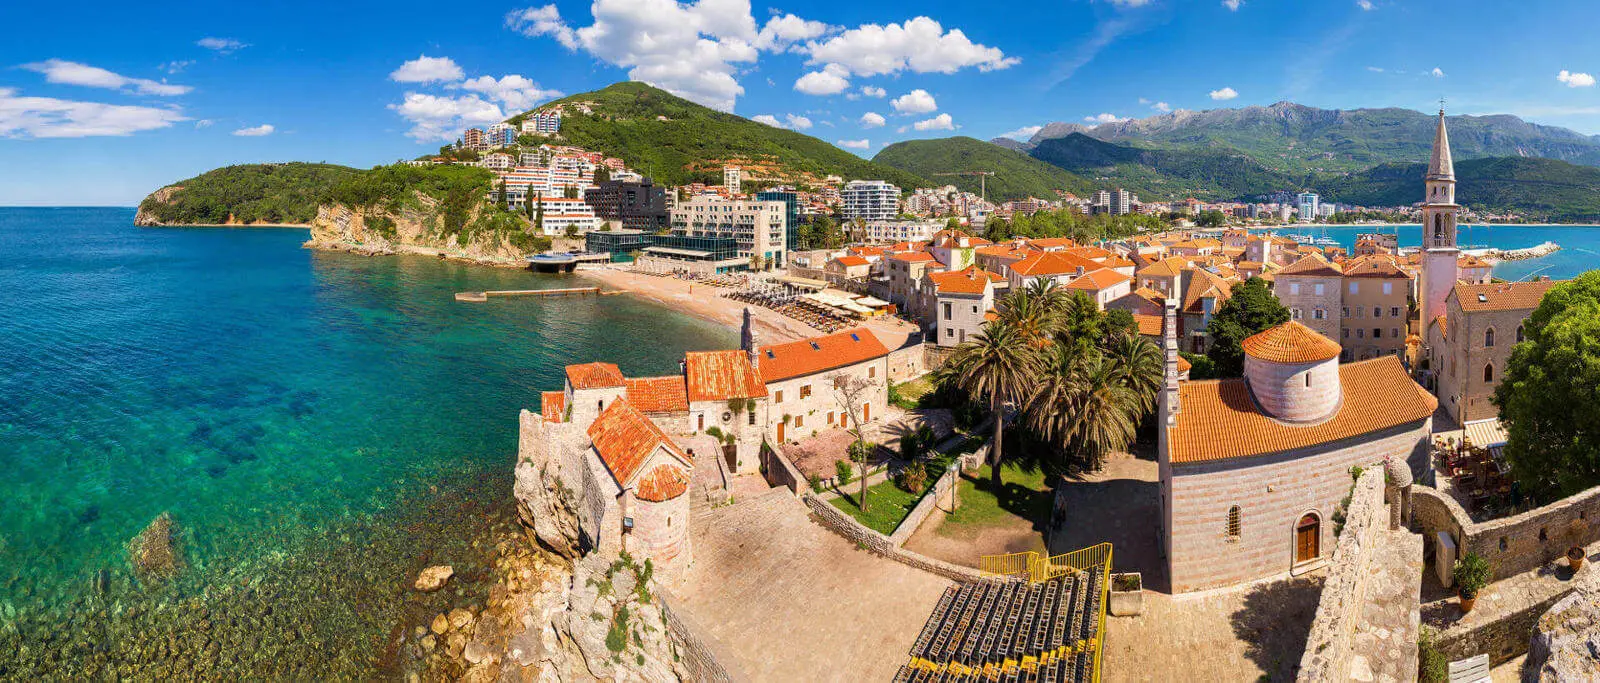 Budva - destinatia ta pentru primavara 2019. Alegeti Muntenegru!